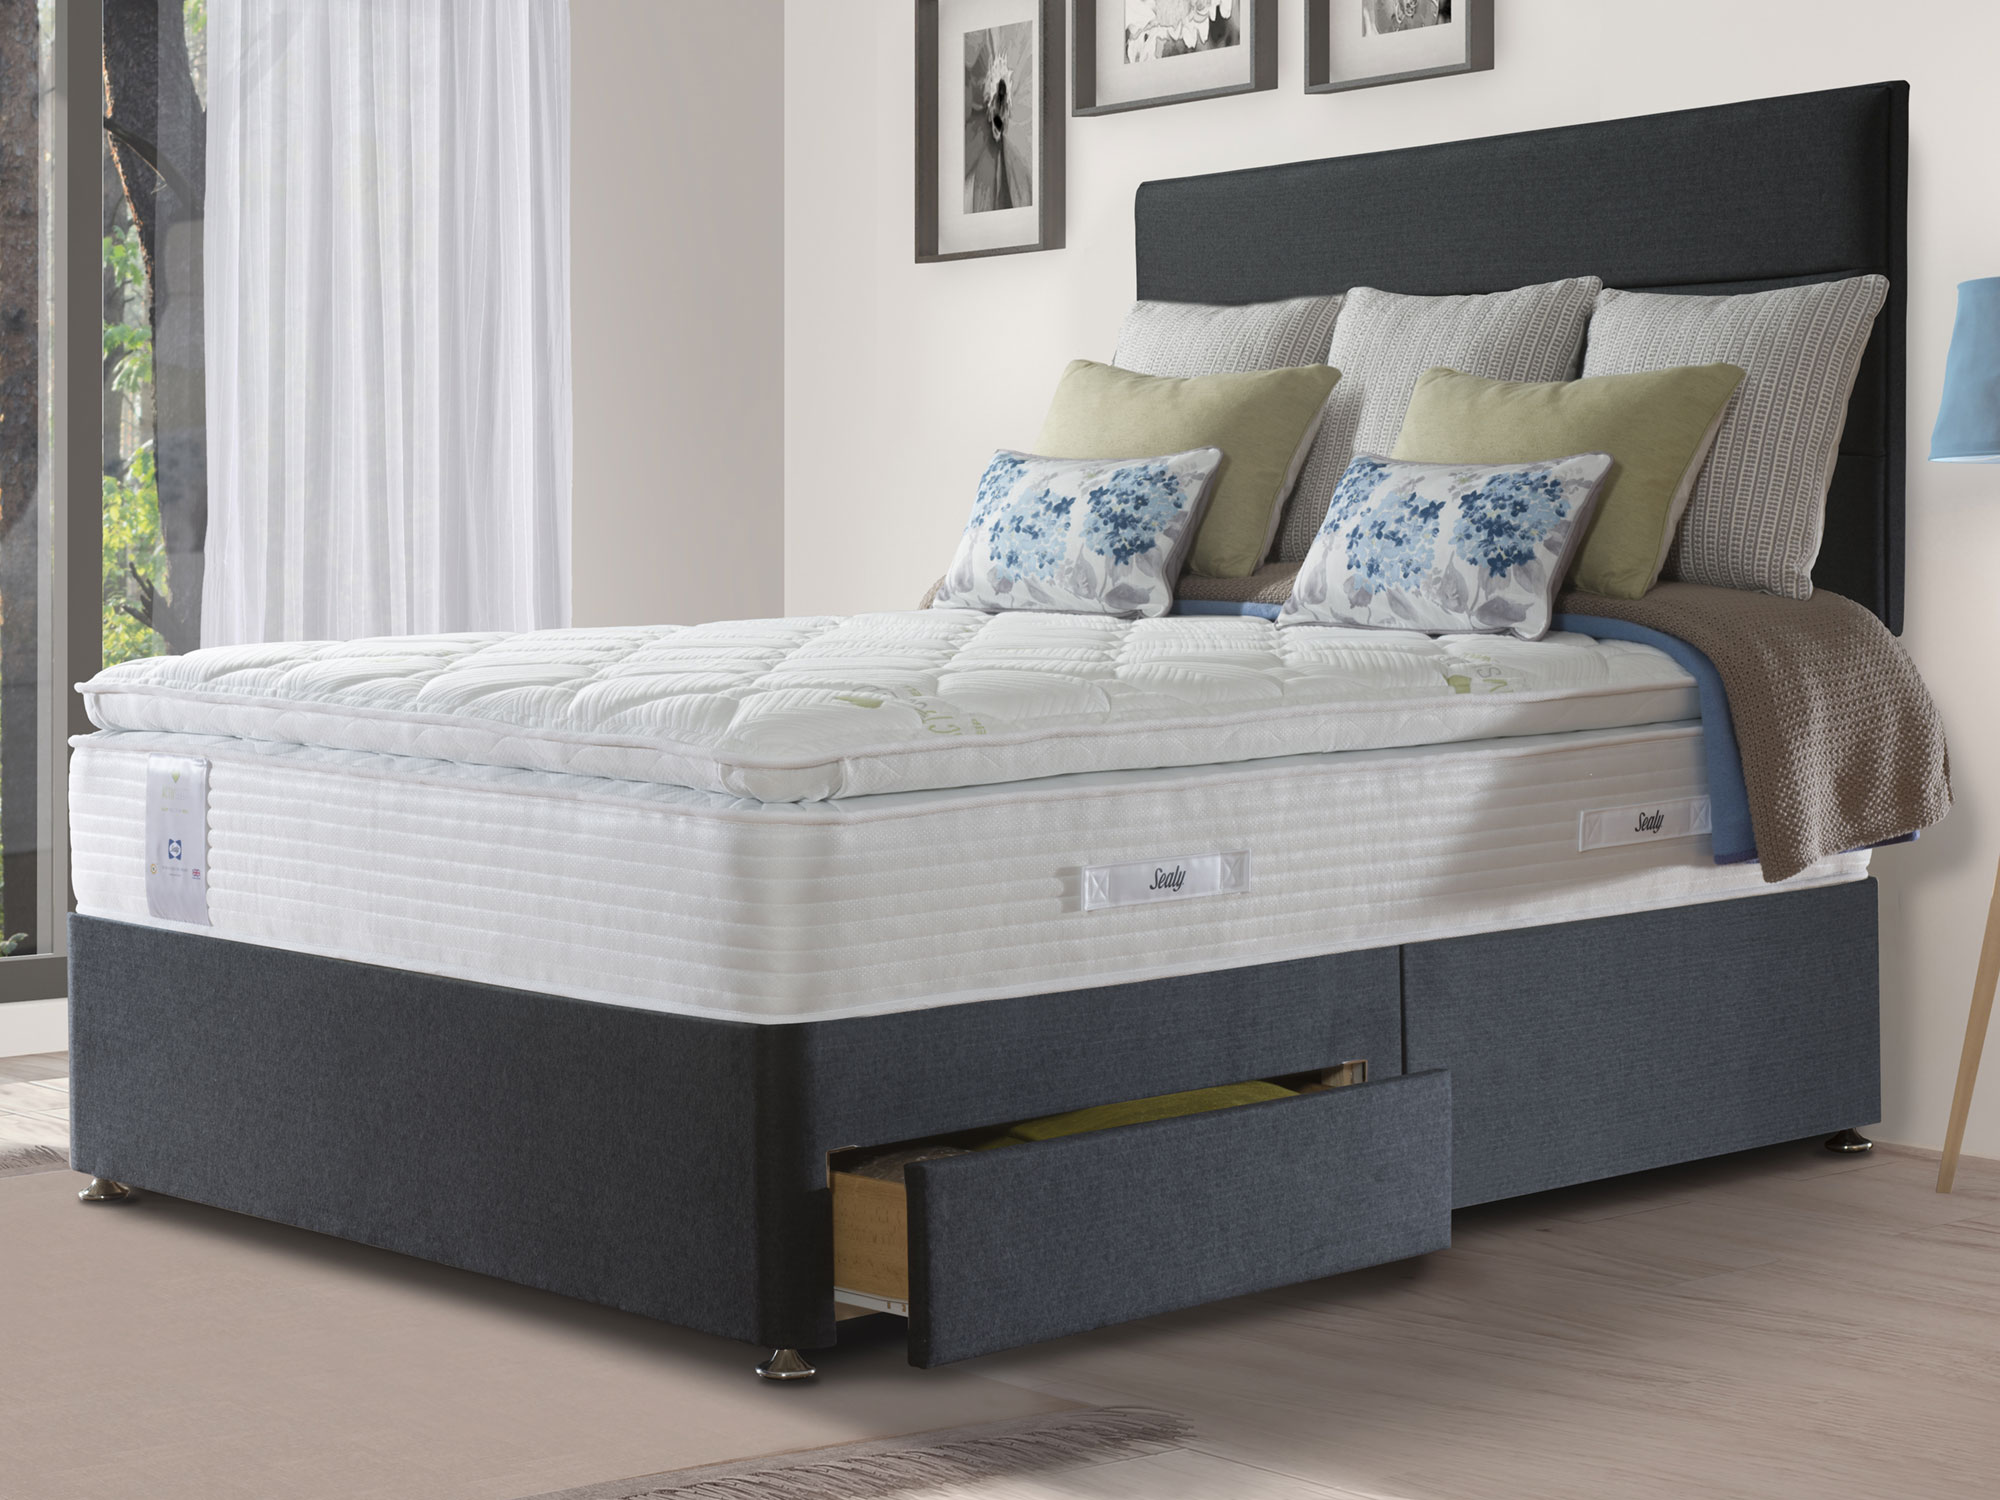 sealy pocket hybrid geltex mattress